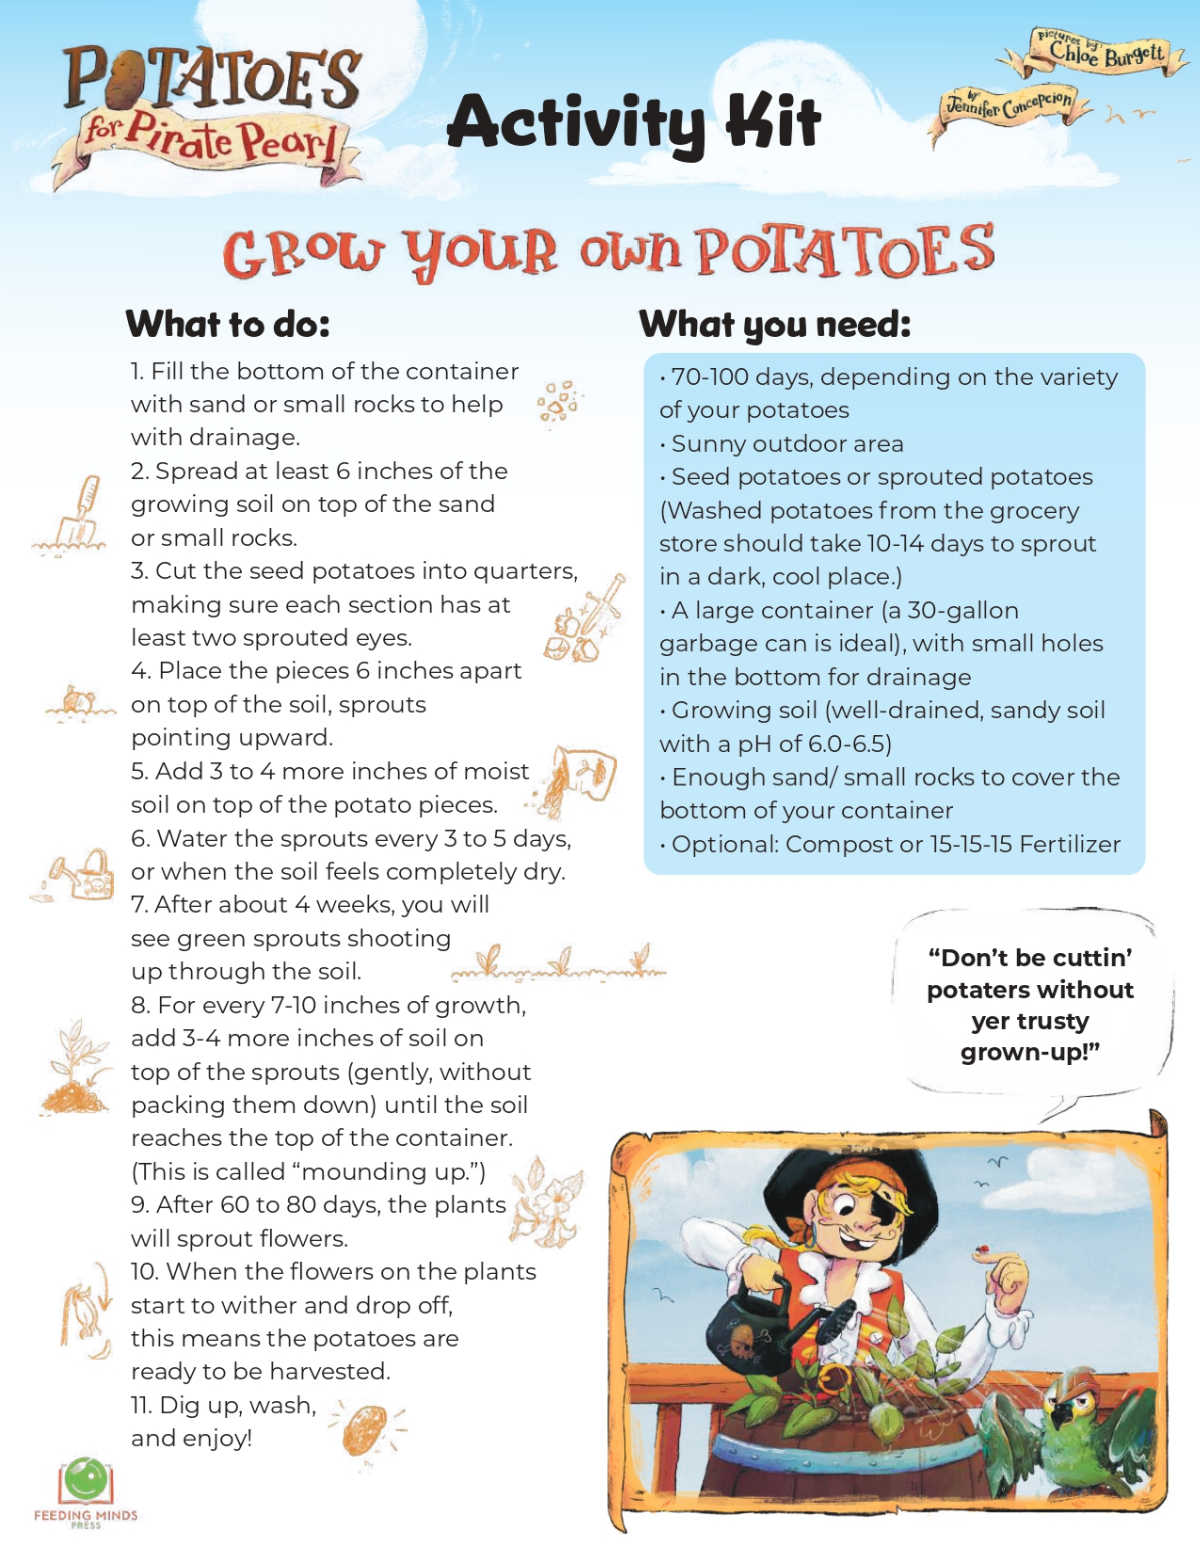 how to grow potatoes like pirate pearl